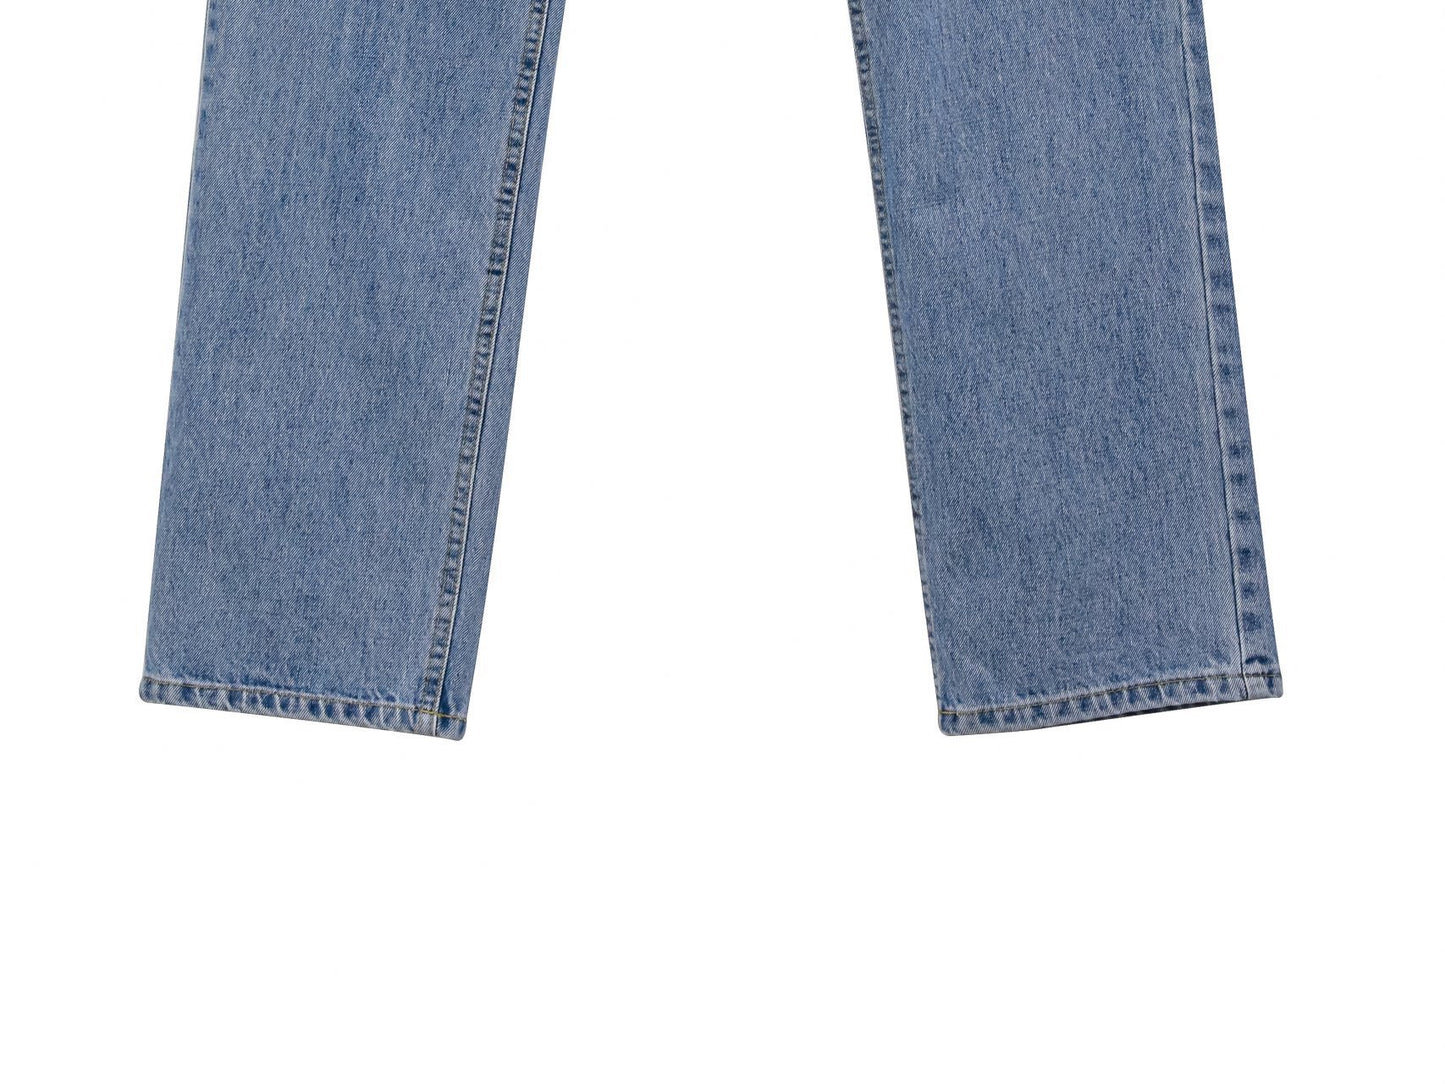 【즉납】【PAPERMOON 페이퍼 문】AW / Maxi Length Button Fly Boyfriend Jeans